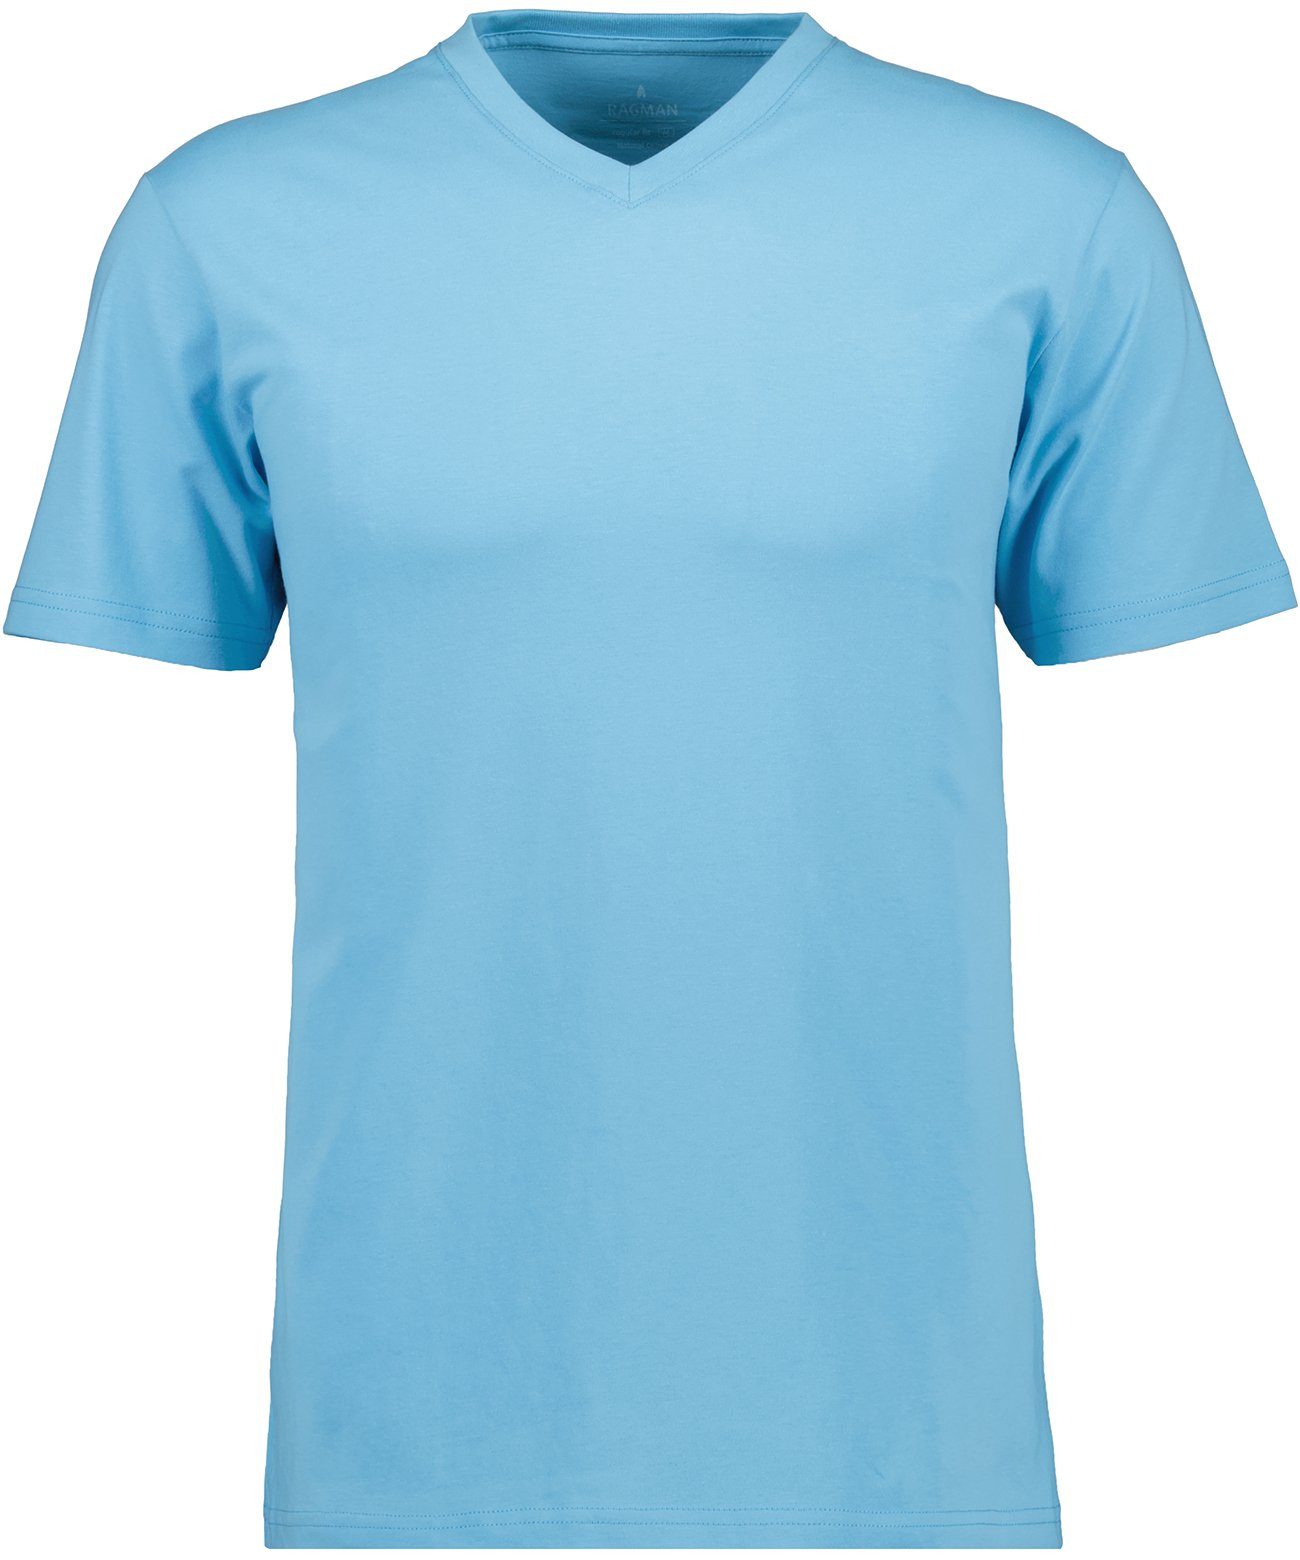 Blau-Melange-703 T-Shirt RAGMAN